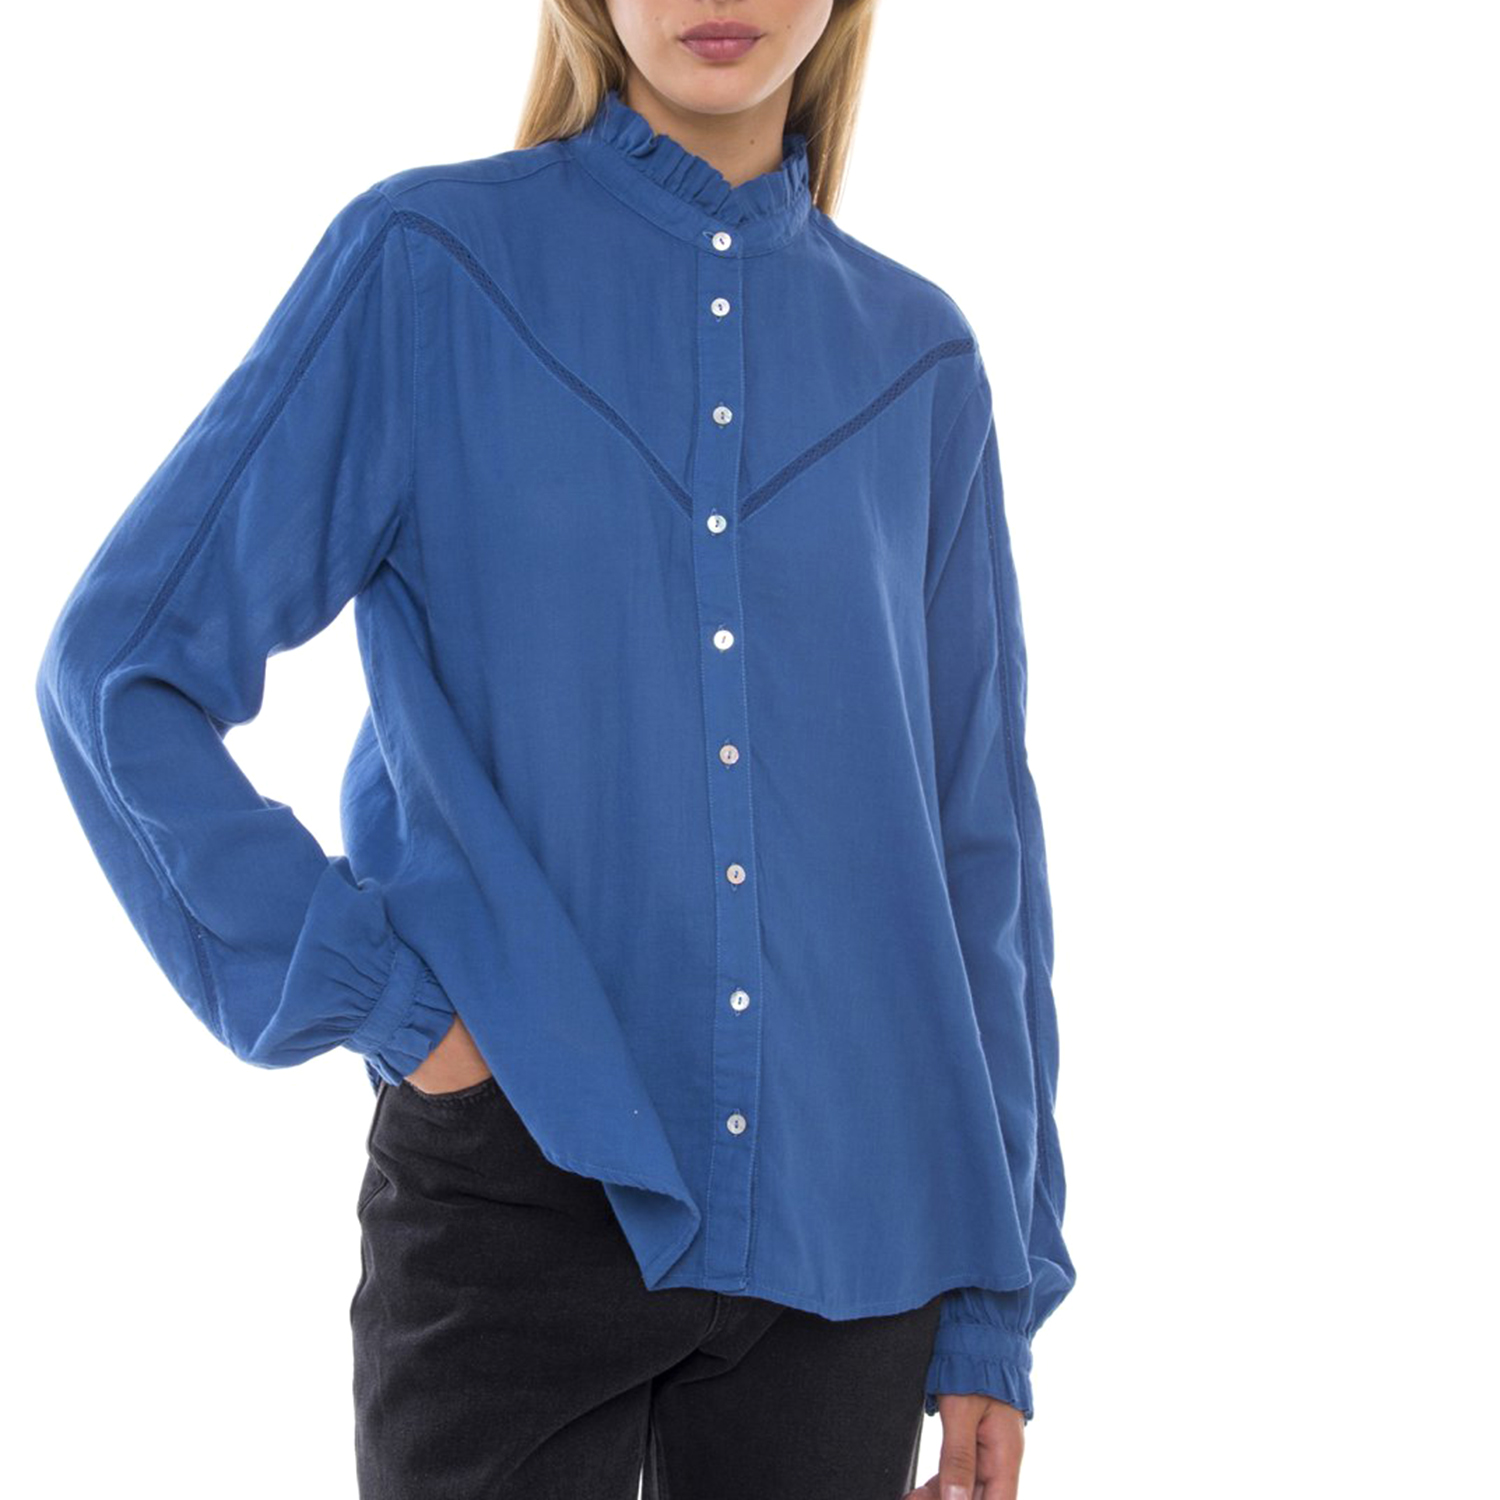 Γυναικεία/Ρούχα/Πουκάμισα/Μακρυμάνικα FUNKY BUDDHA - Γυναικείο πουκάμισο FUNKY BUDDHA μπλε